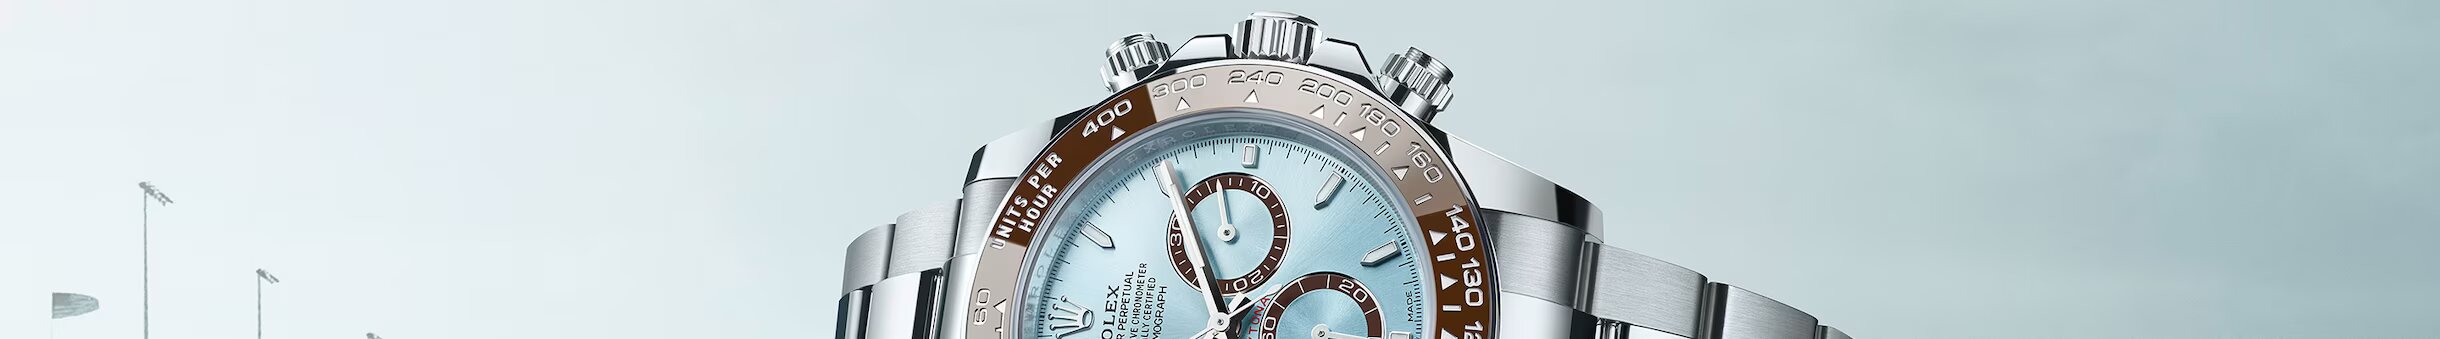 Rolex Watches William Barthman